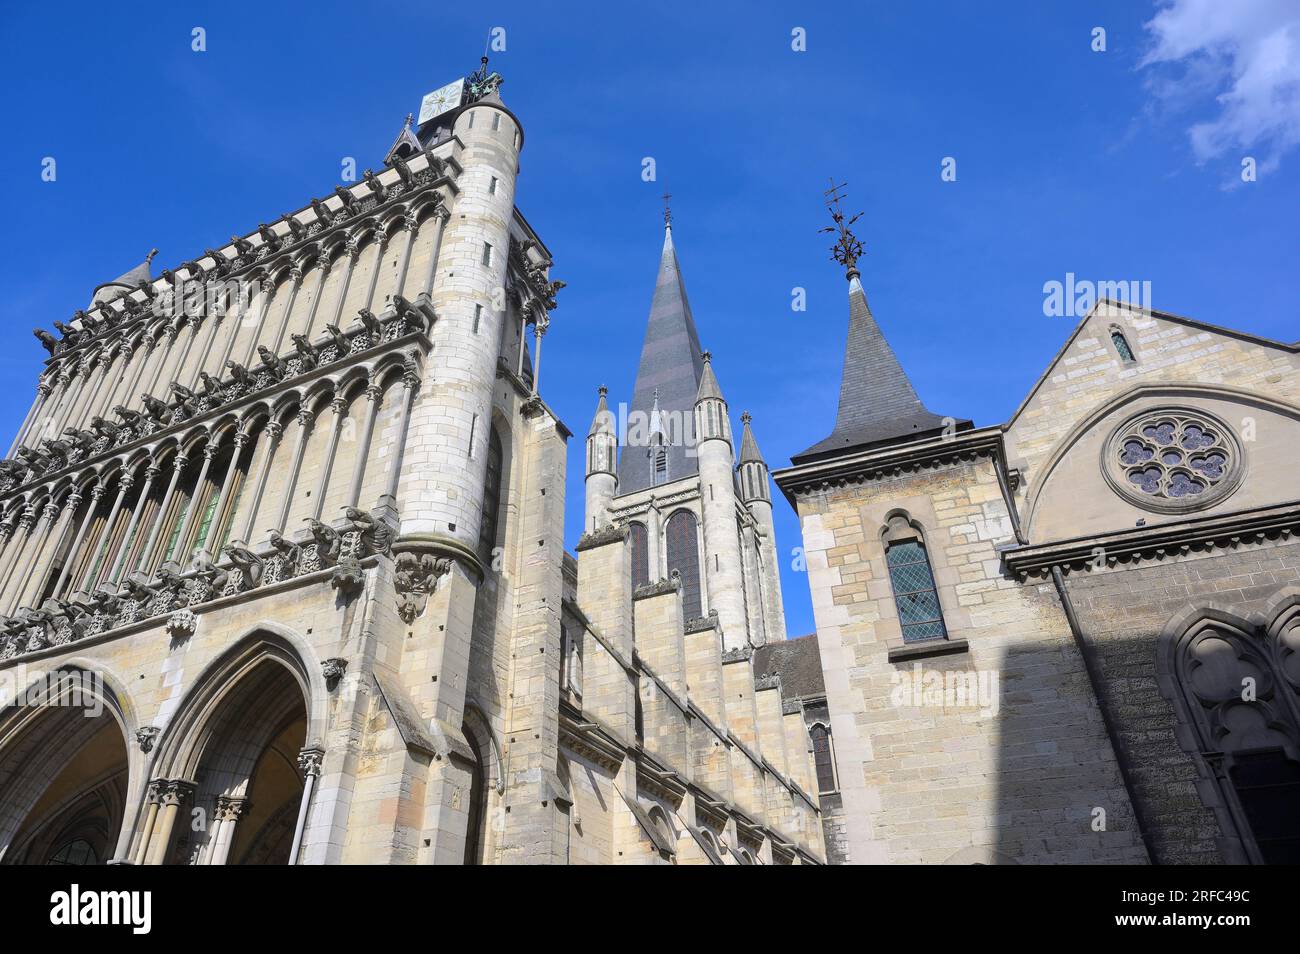 L'église notre Dame est un chef-d'œuvre de l'art gothique (13e siècle), Dijon FR Banque D'Images